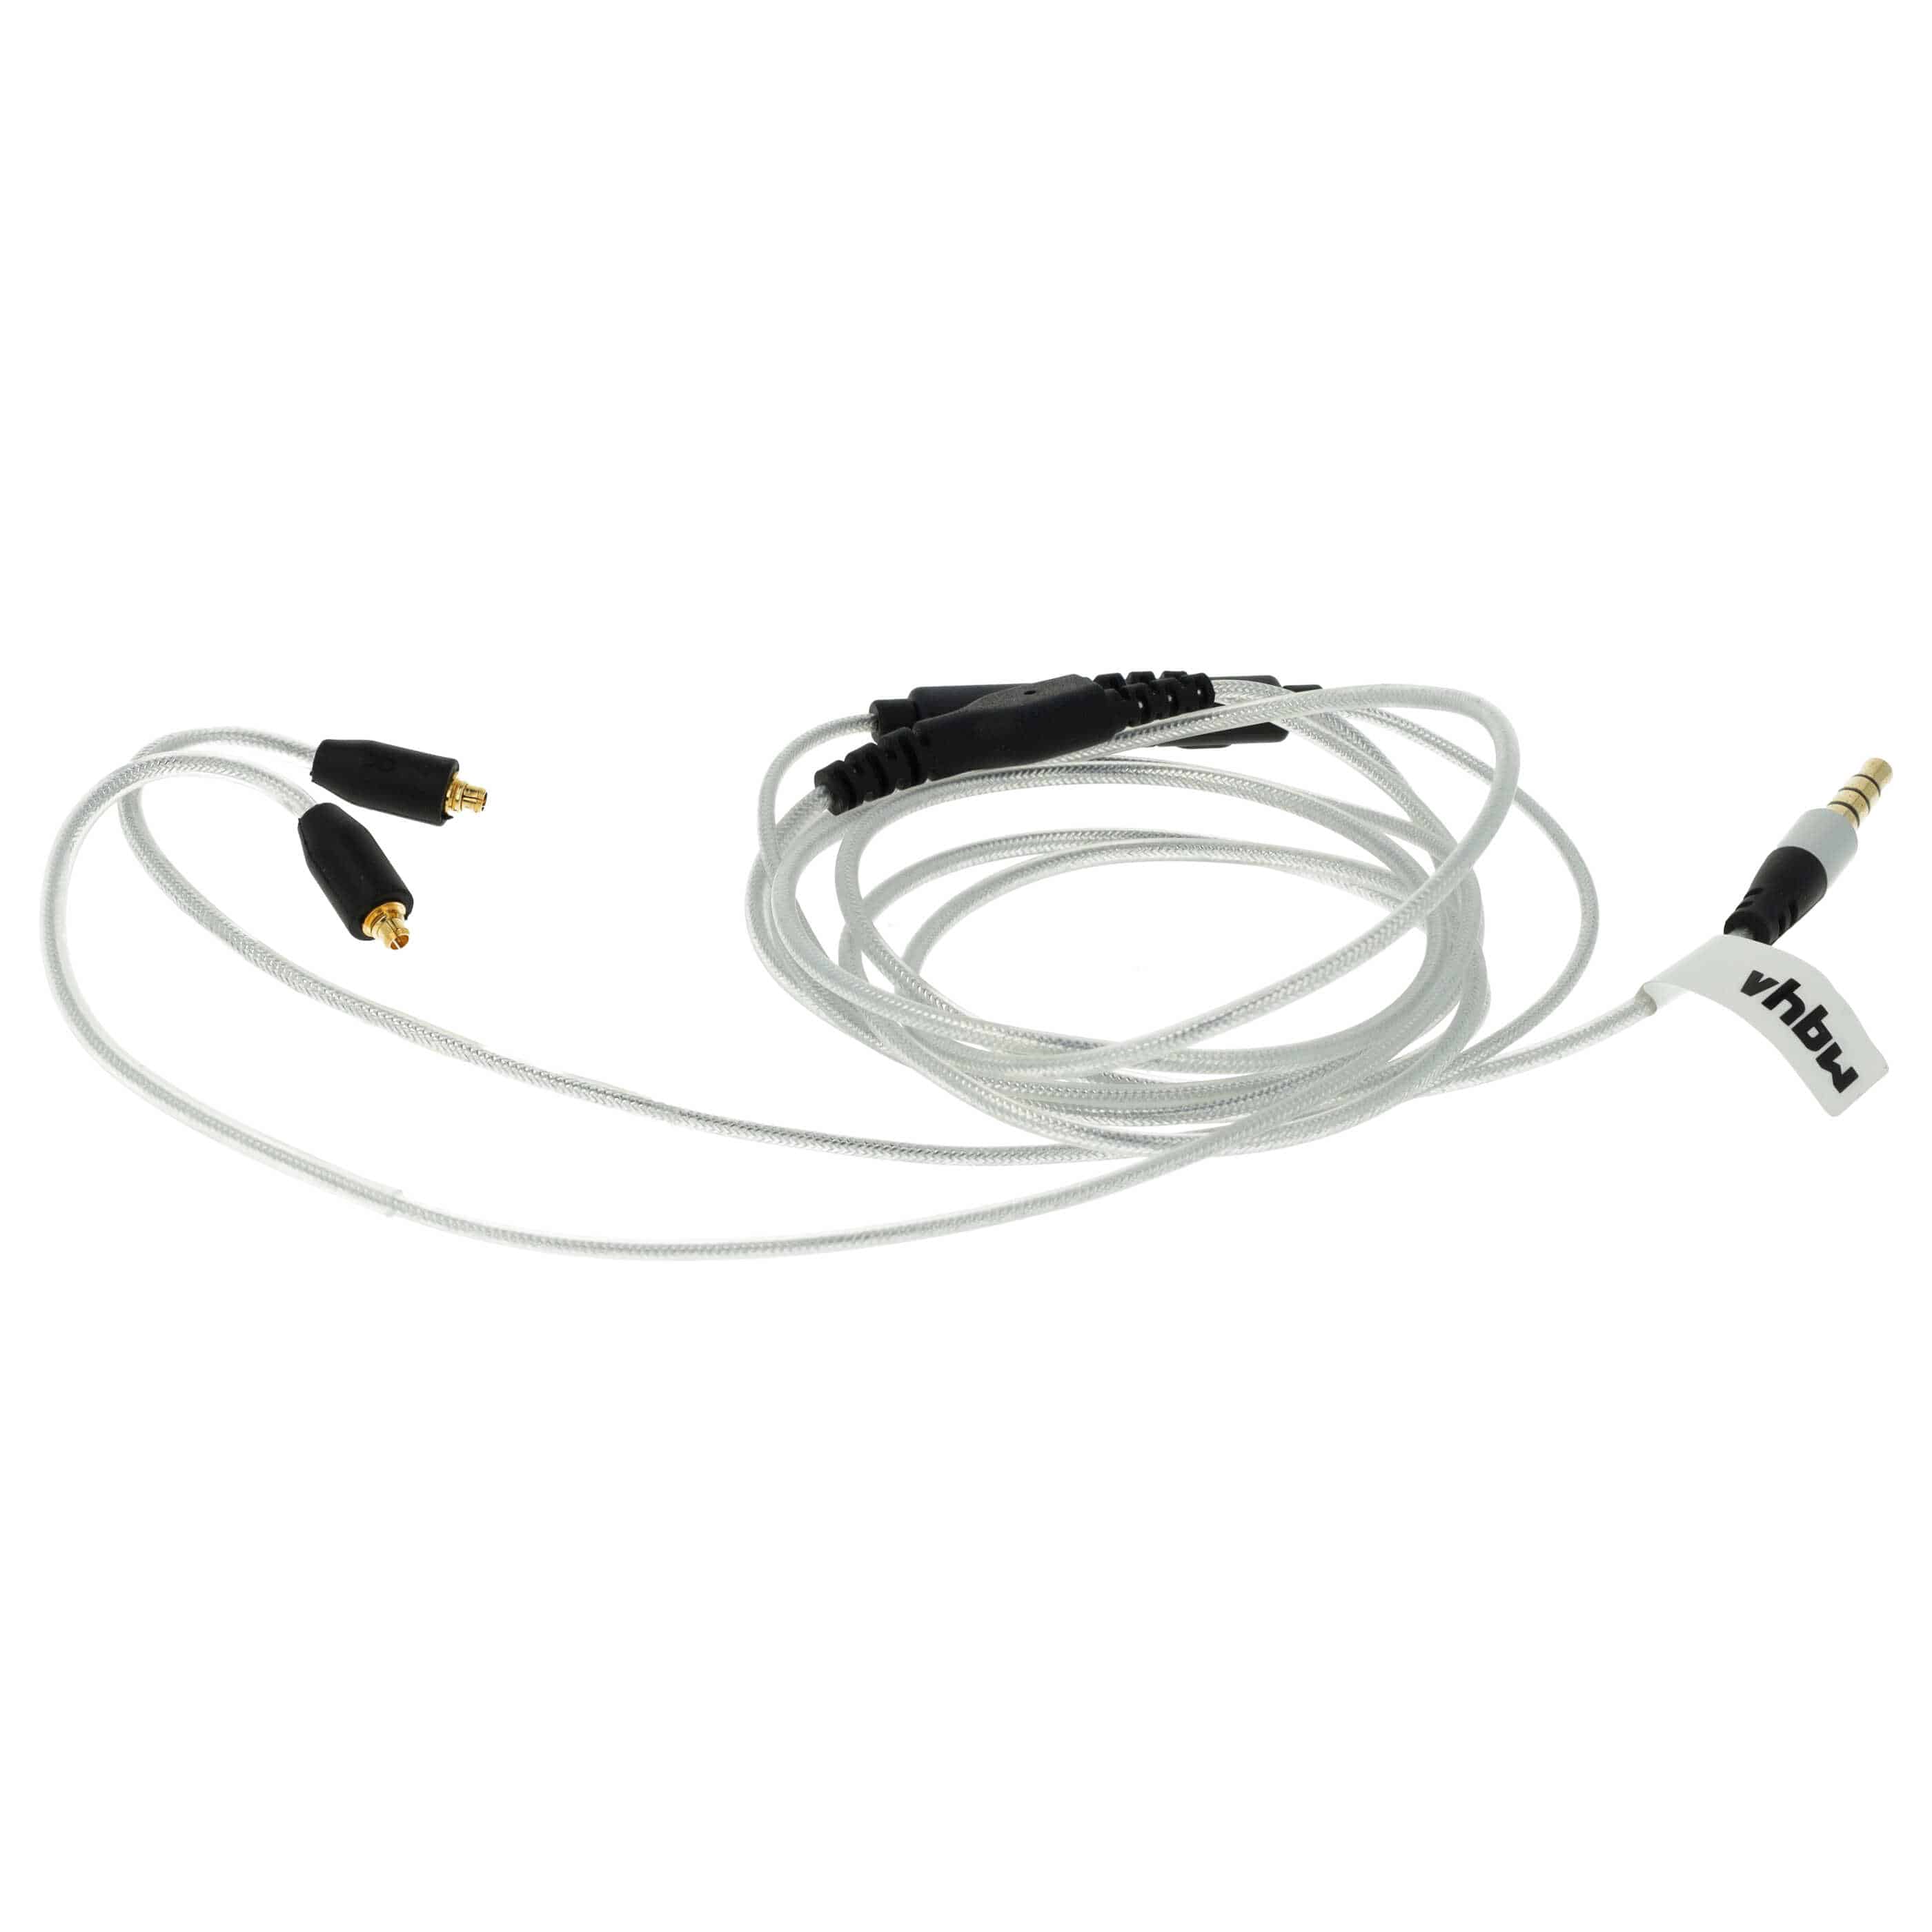 Cable audio AUX a conector jack de 3,5 mm para auriculares Shure, etc.